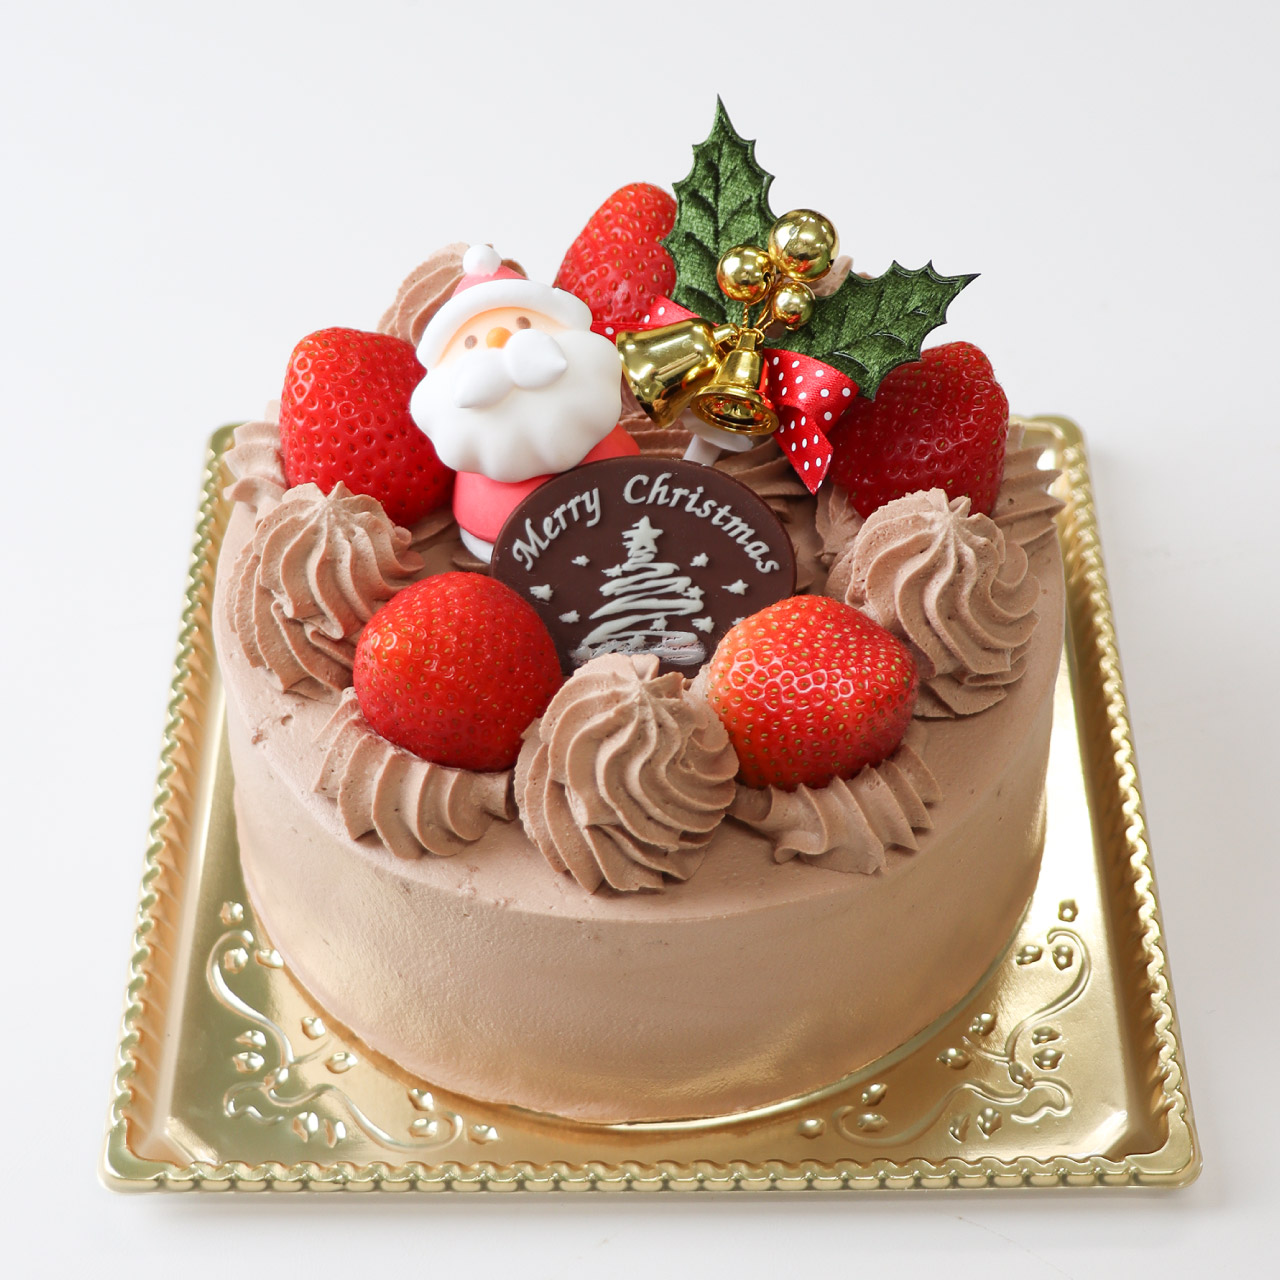 【12/21-25店頭受取】チョコレートクリスマス<12cm>